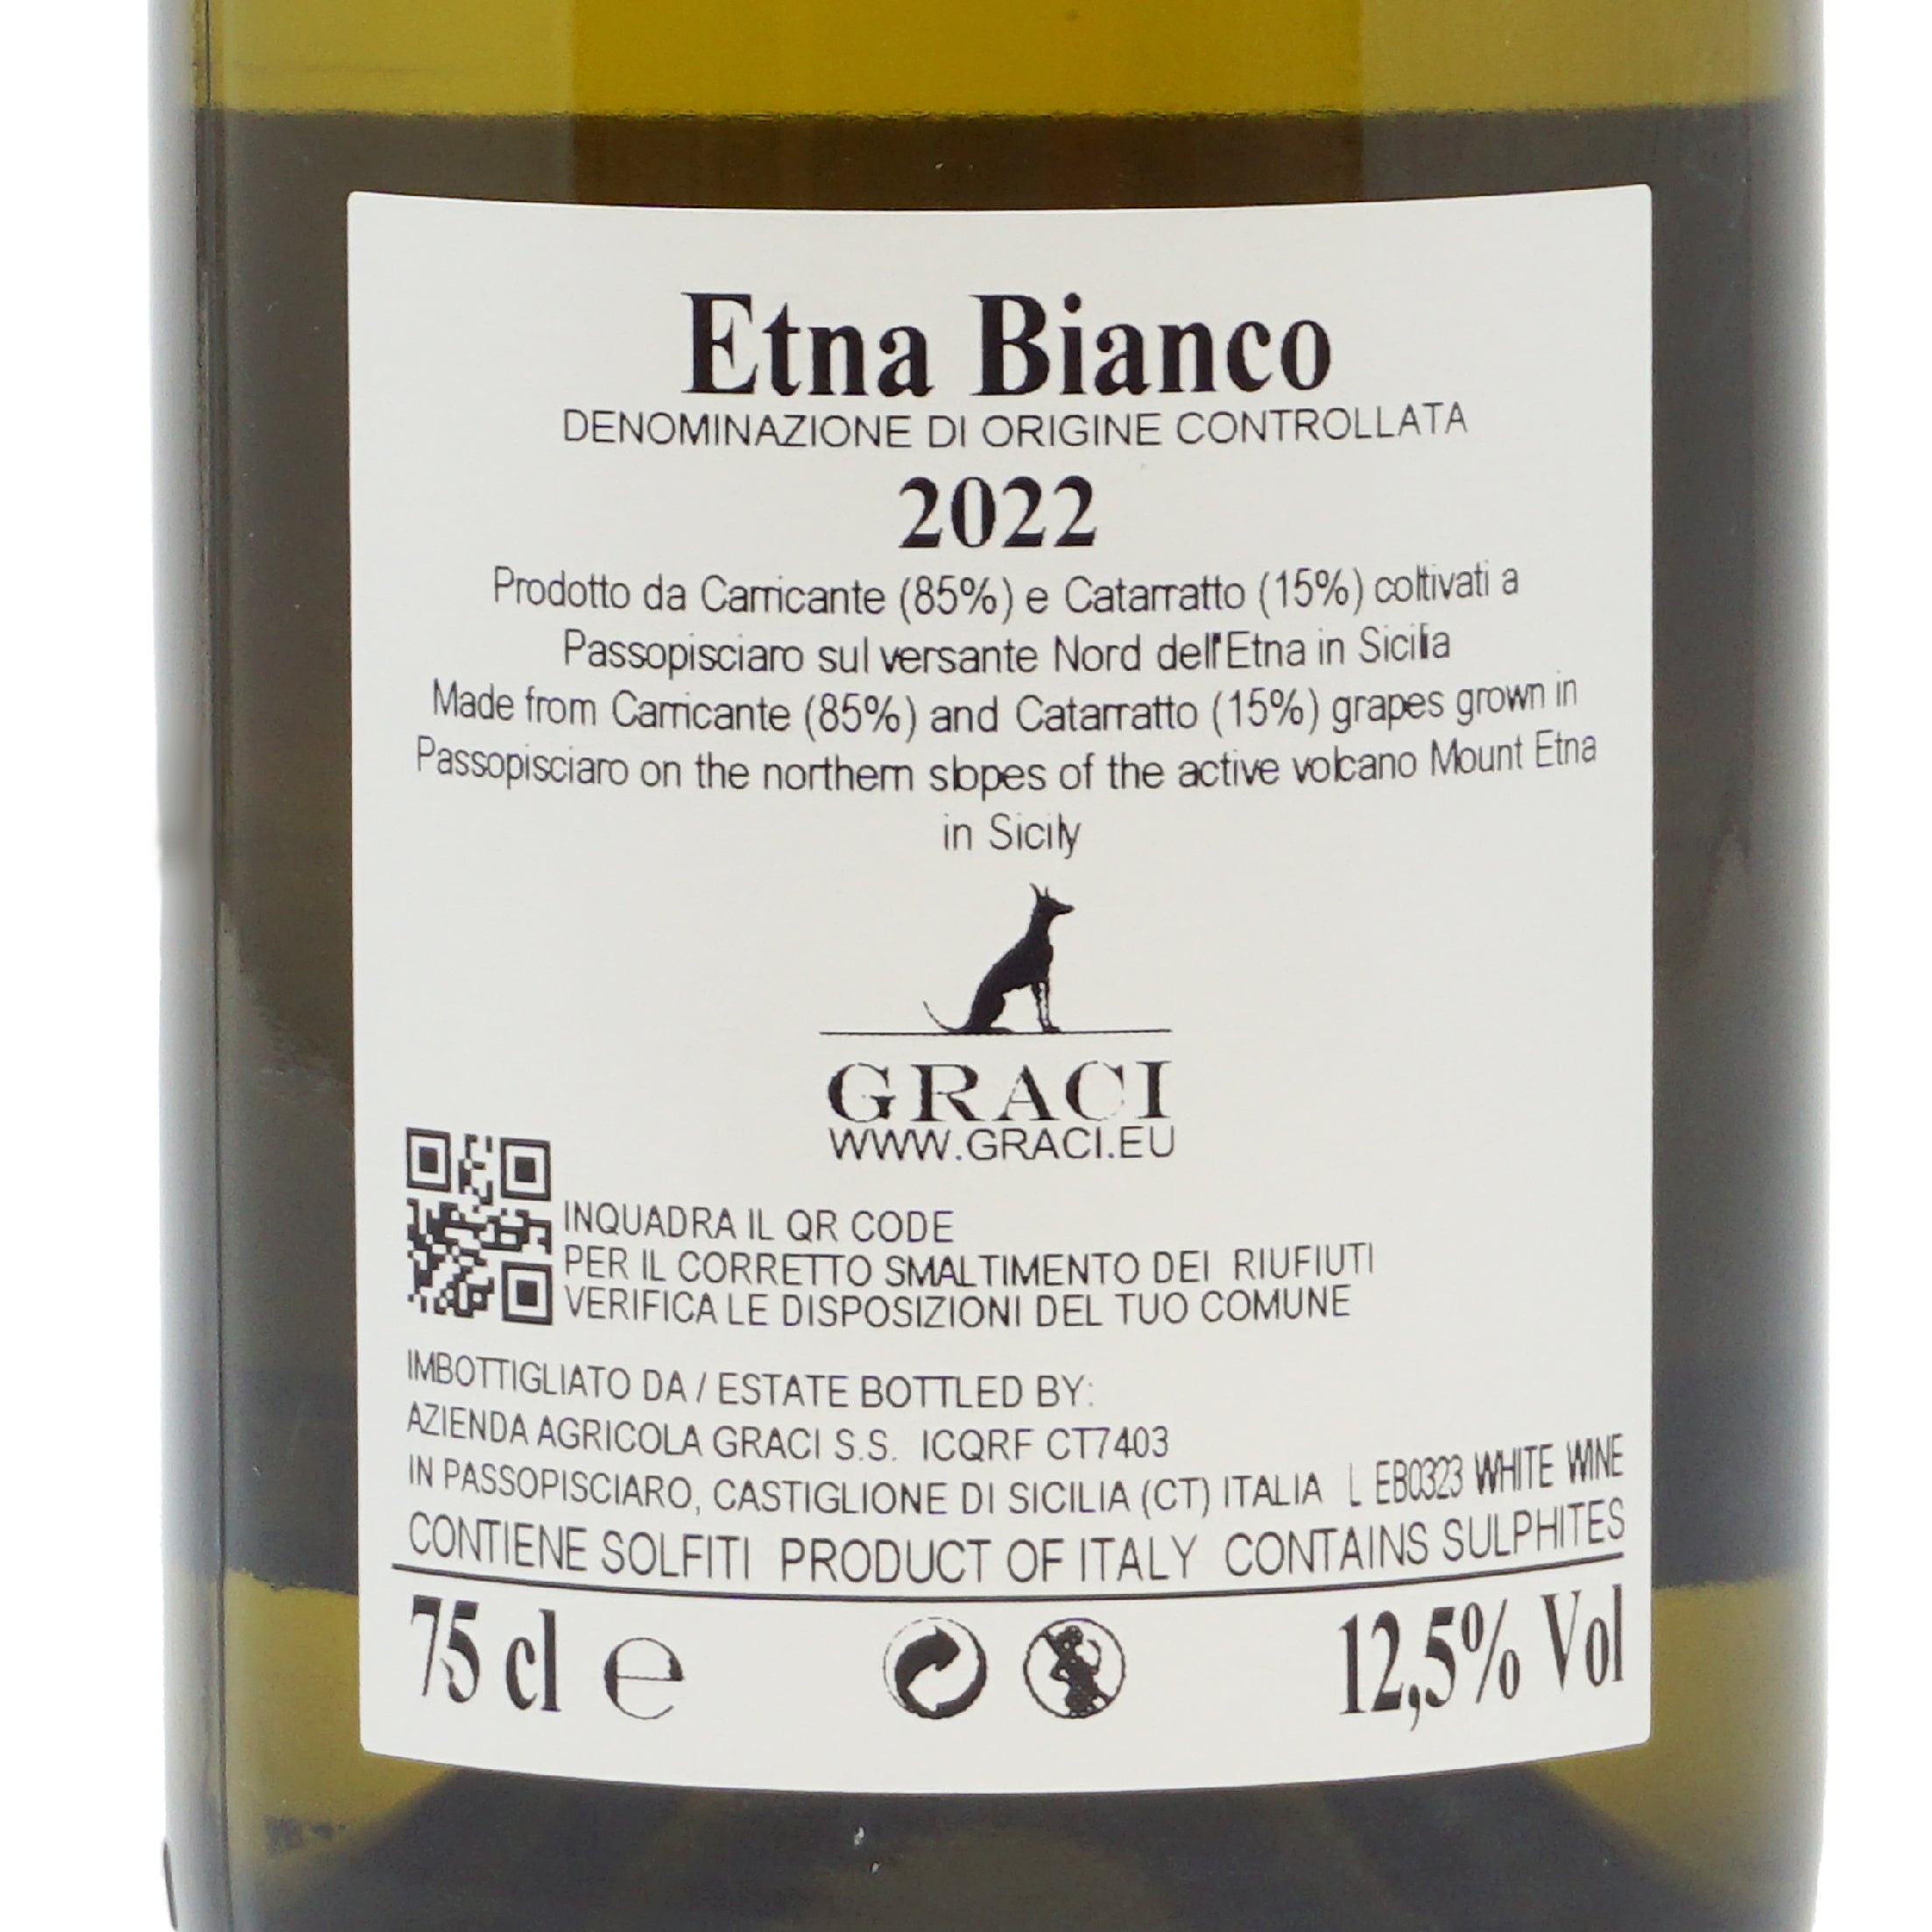 Etna Bianco 2022 Doc Graci lt.0.750